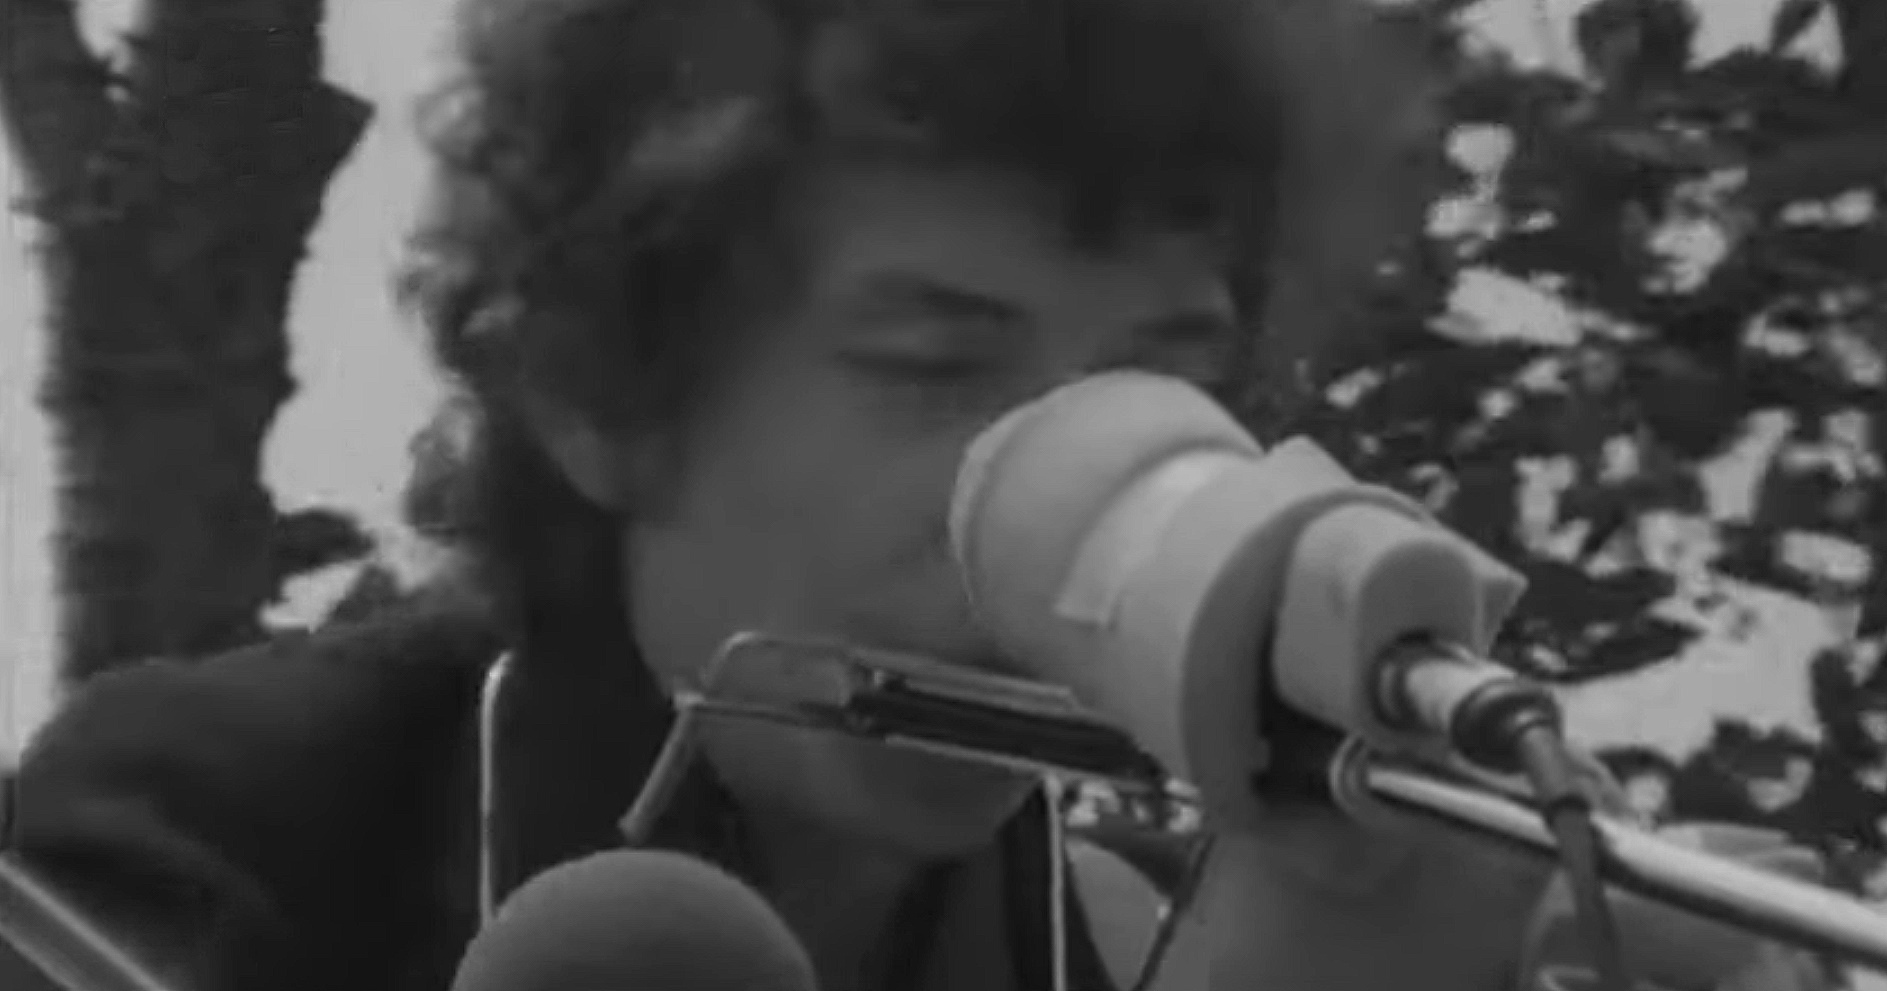 En el festival de Newport de 1965, Bob Dylan tomó una decisión audaz y controvertida que cambiaría para siempre la percepción que el público tenía de él. A diferencia de sus actuaciones anteriores, esta vez subió al escenario acompañado de una banda de rock. Con Mike Bloomfield en la guitarra eléctrica, Al Kooper en el órgano y Barry Goldberg en el piano, Dylan estaba listo para presentar un nuevo sonido que fusionaba elementos de folk y rock.